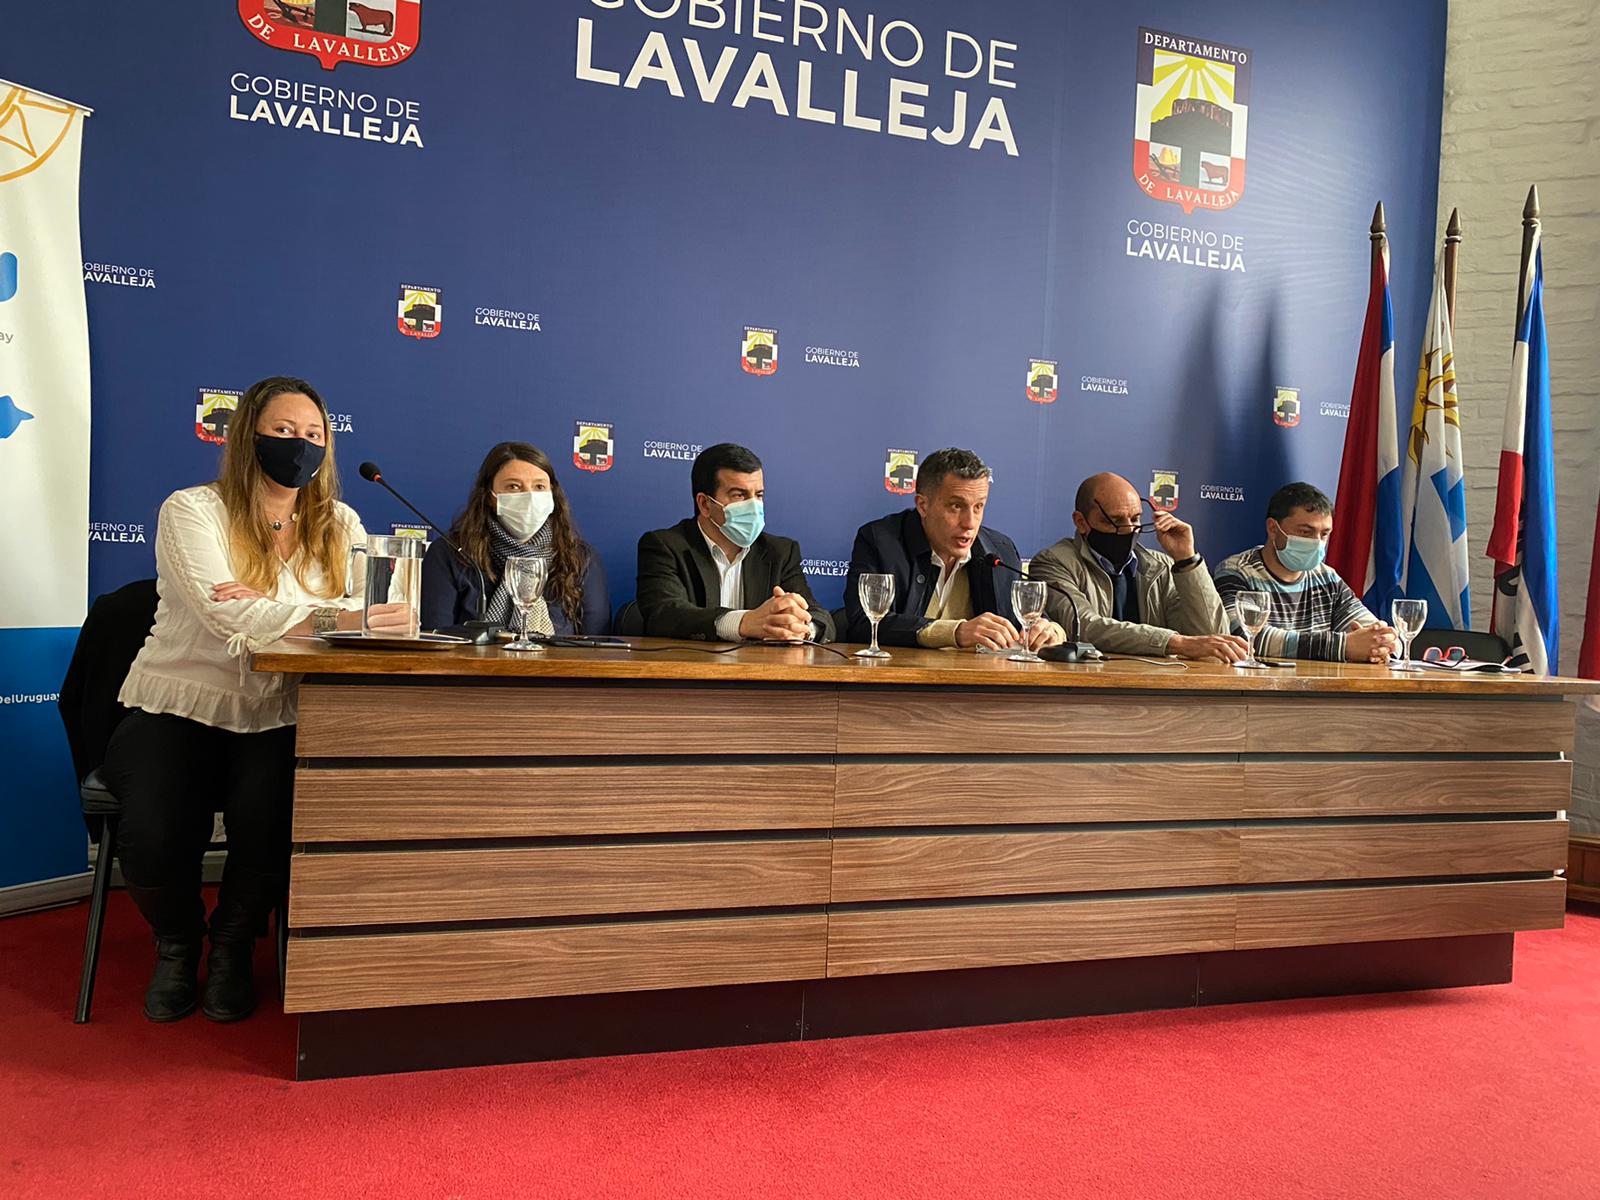 Presentación de la Junta Departamental de Drogas y Dispositivo Ciudadela de Lavalleja